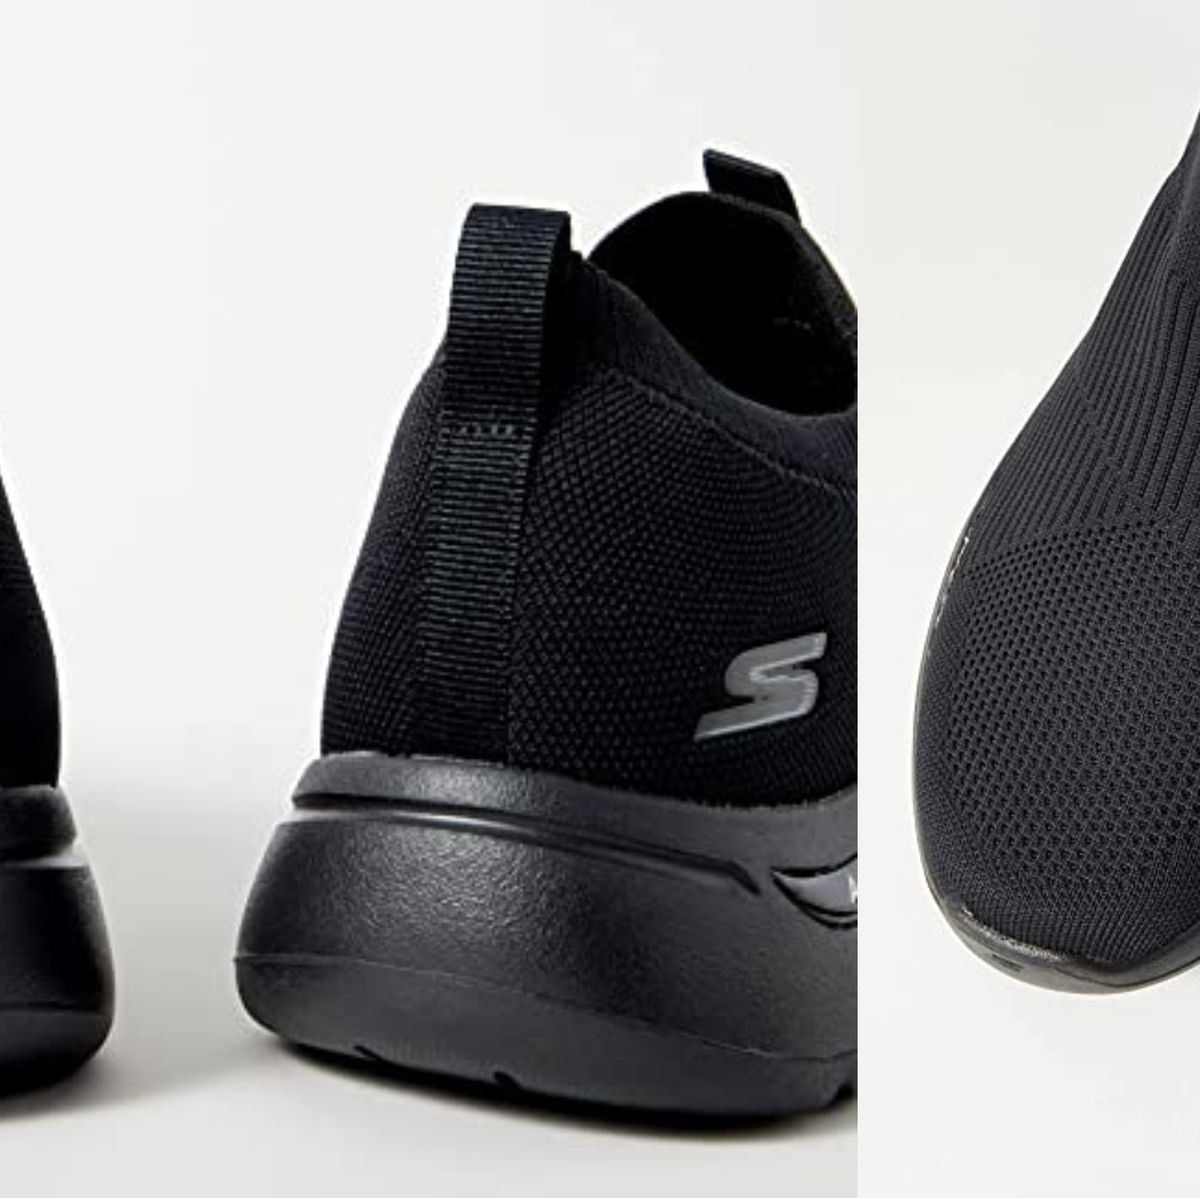 Las zapatillas Skechers más cómodas para regalar a tu padre